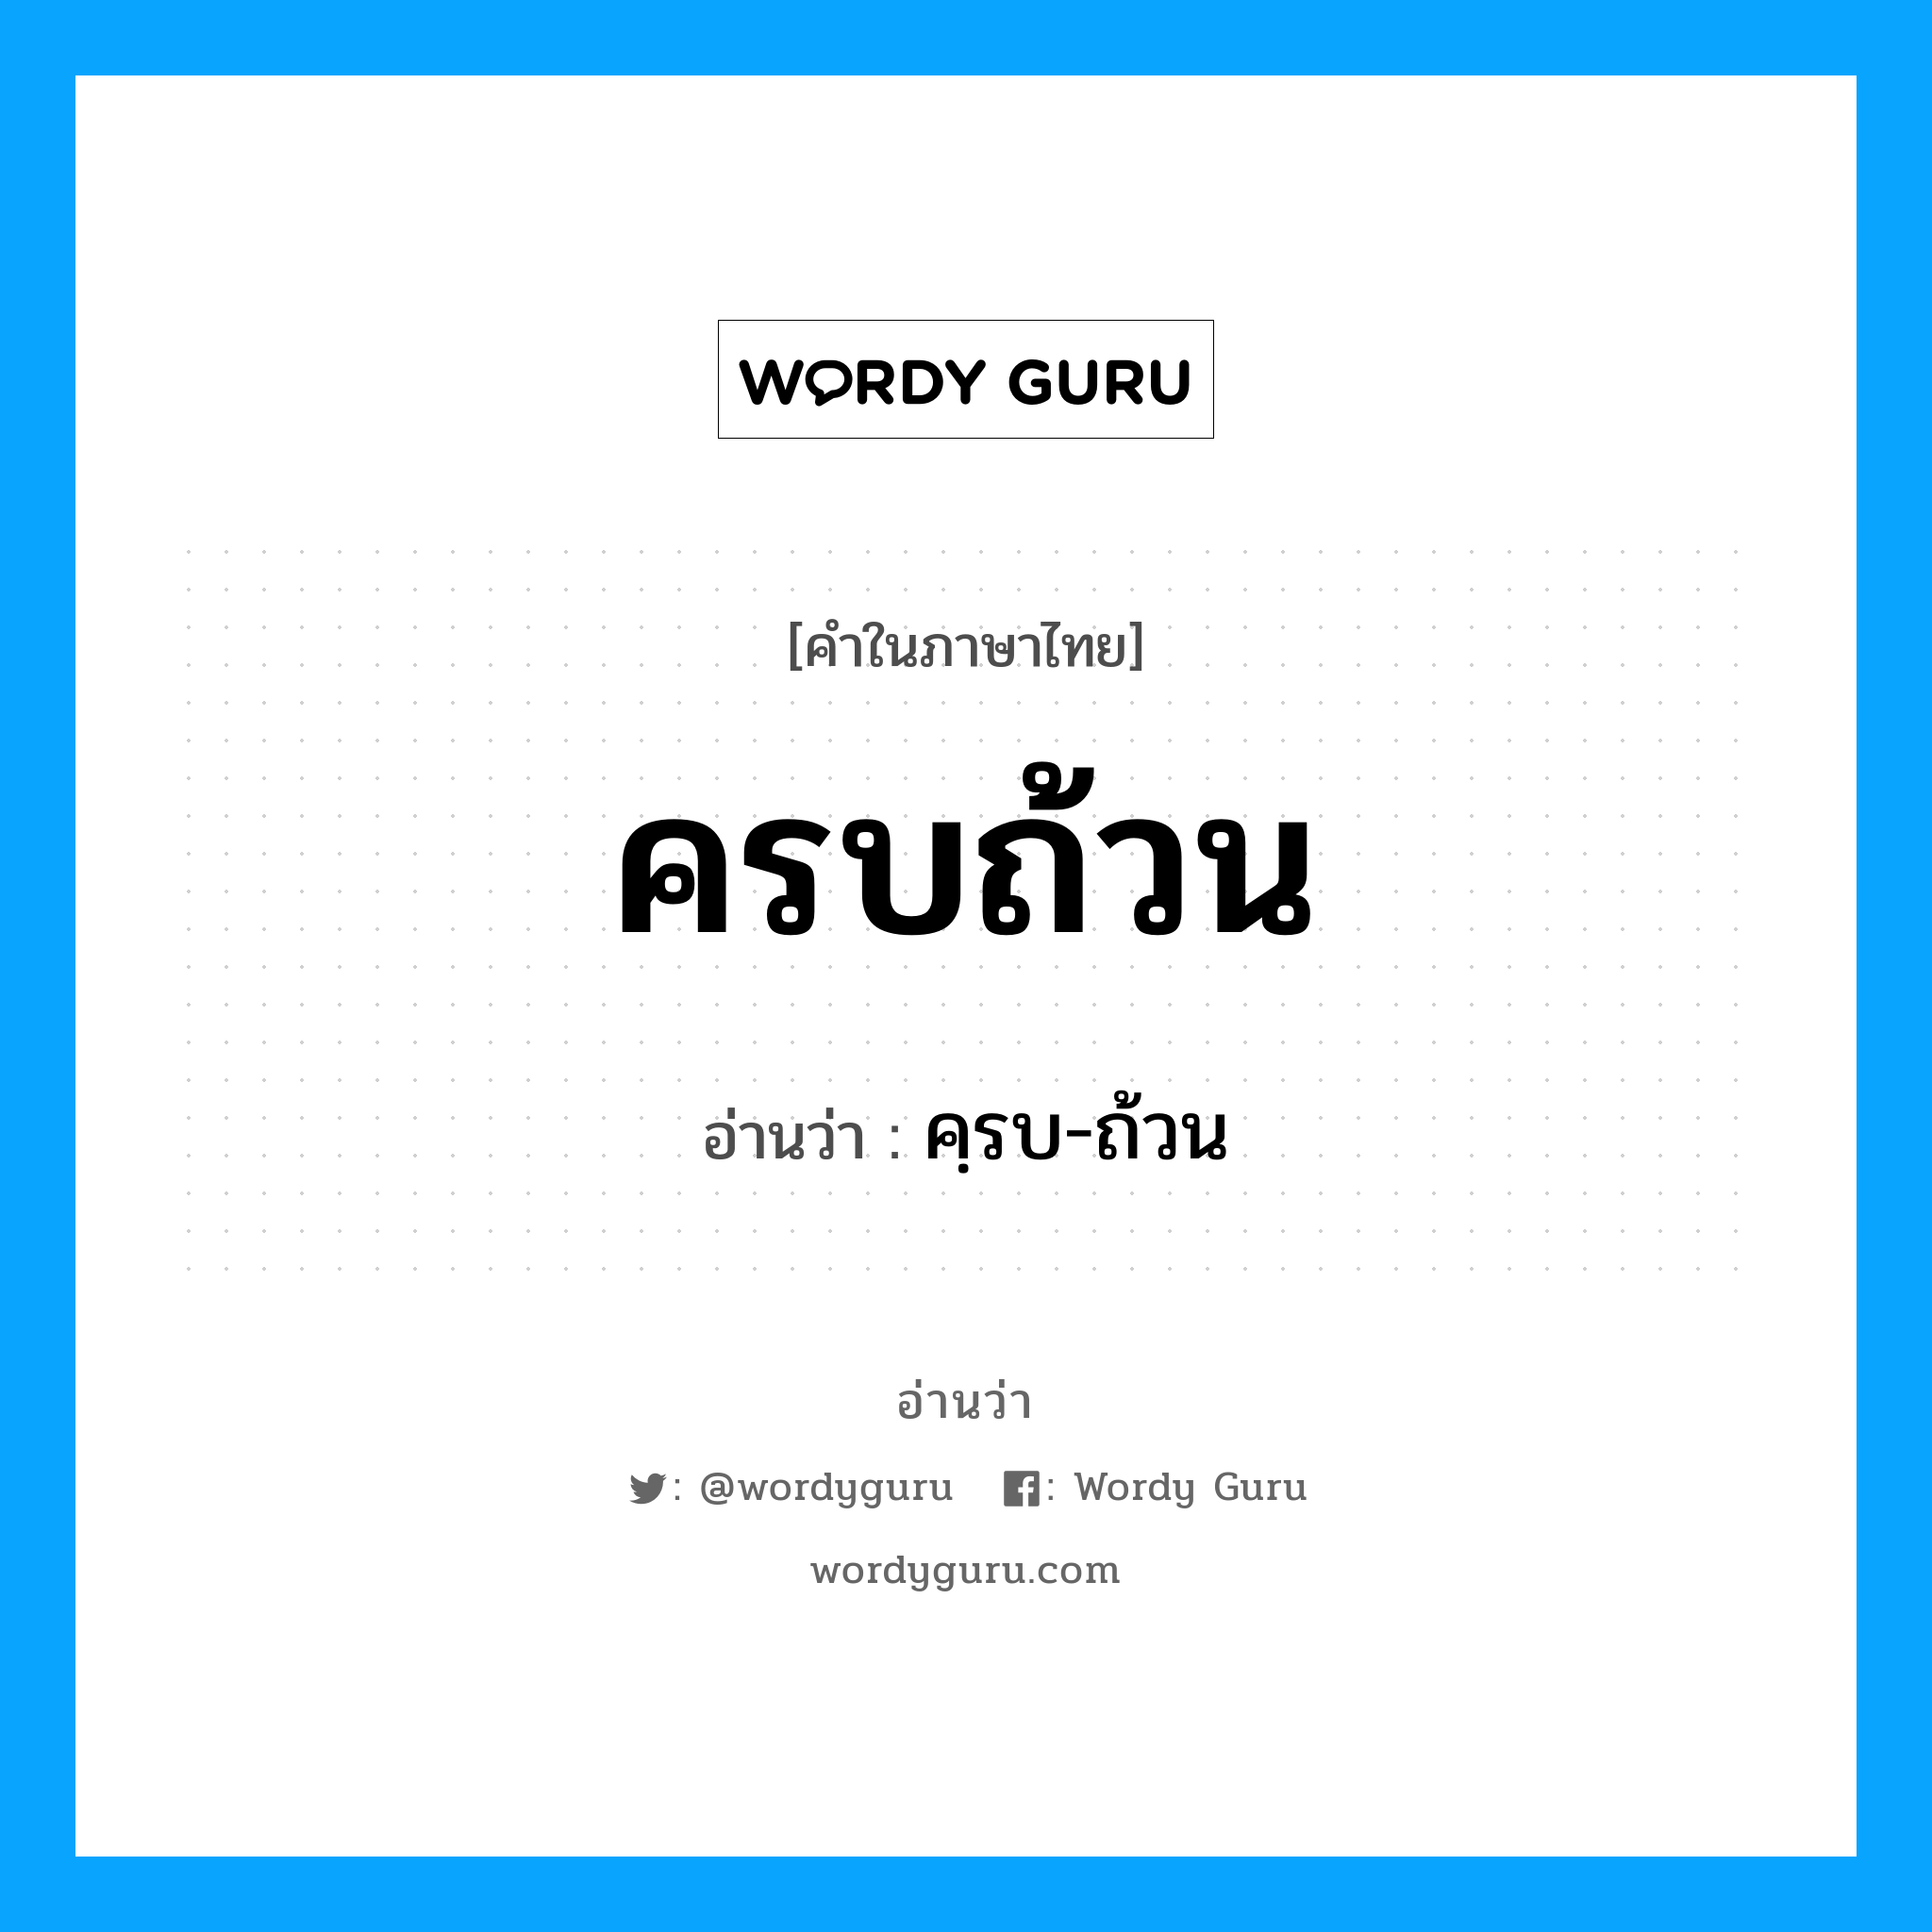 คฺรบ-ถ้วน เป็นคำอ่านของคำไหน?, คำในภาษาไทย คฺรบ-ถ้วน อ่านว่า ครบถ้วน